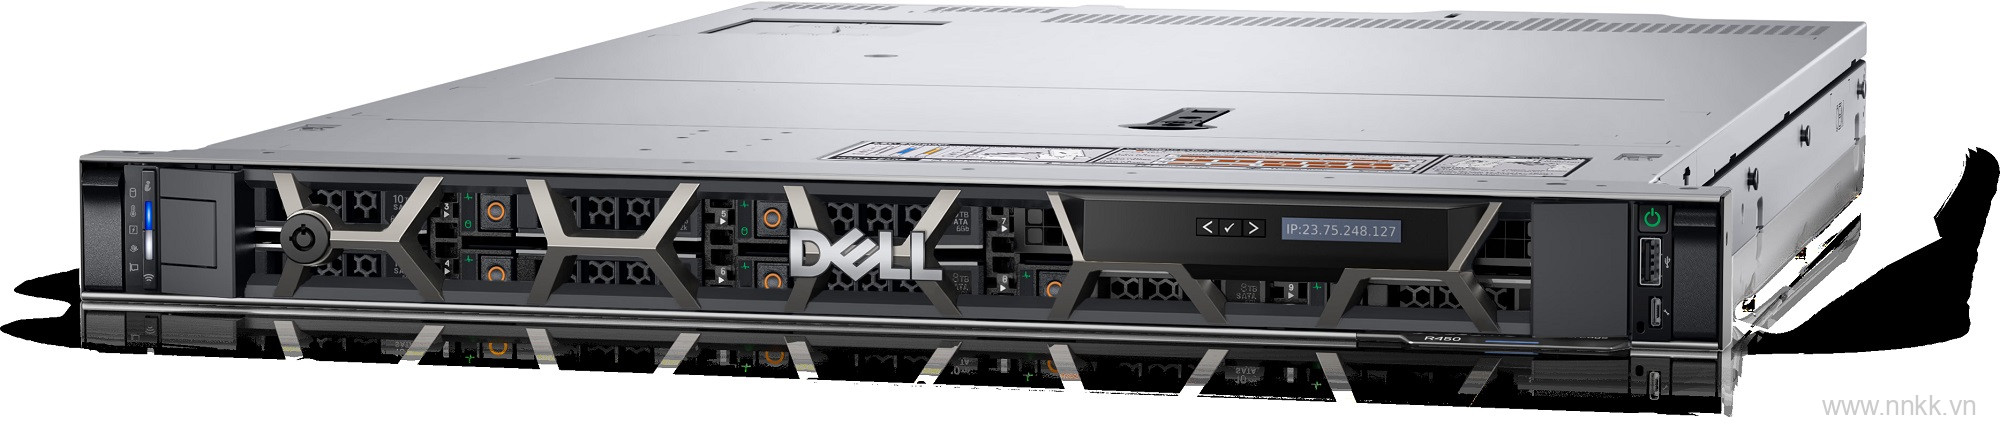 Máy chủ Dell PowerEdge R450 Xeon Silver 4310,Ram 16GB,HDD 2TB 7.2K